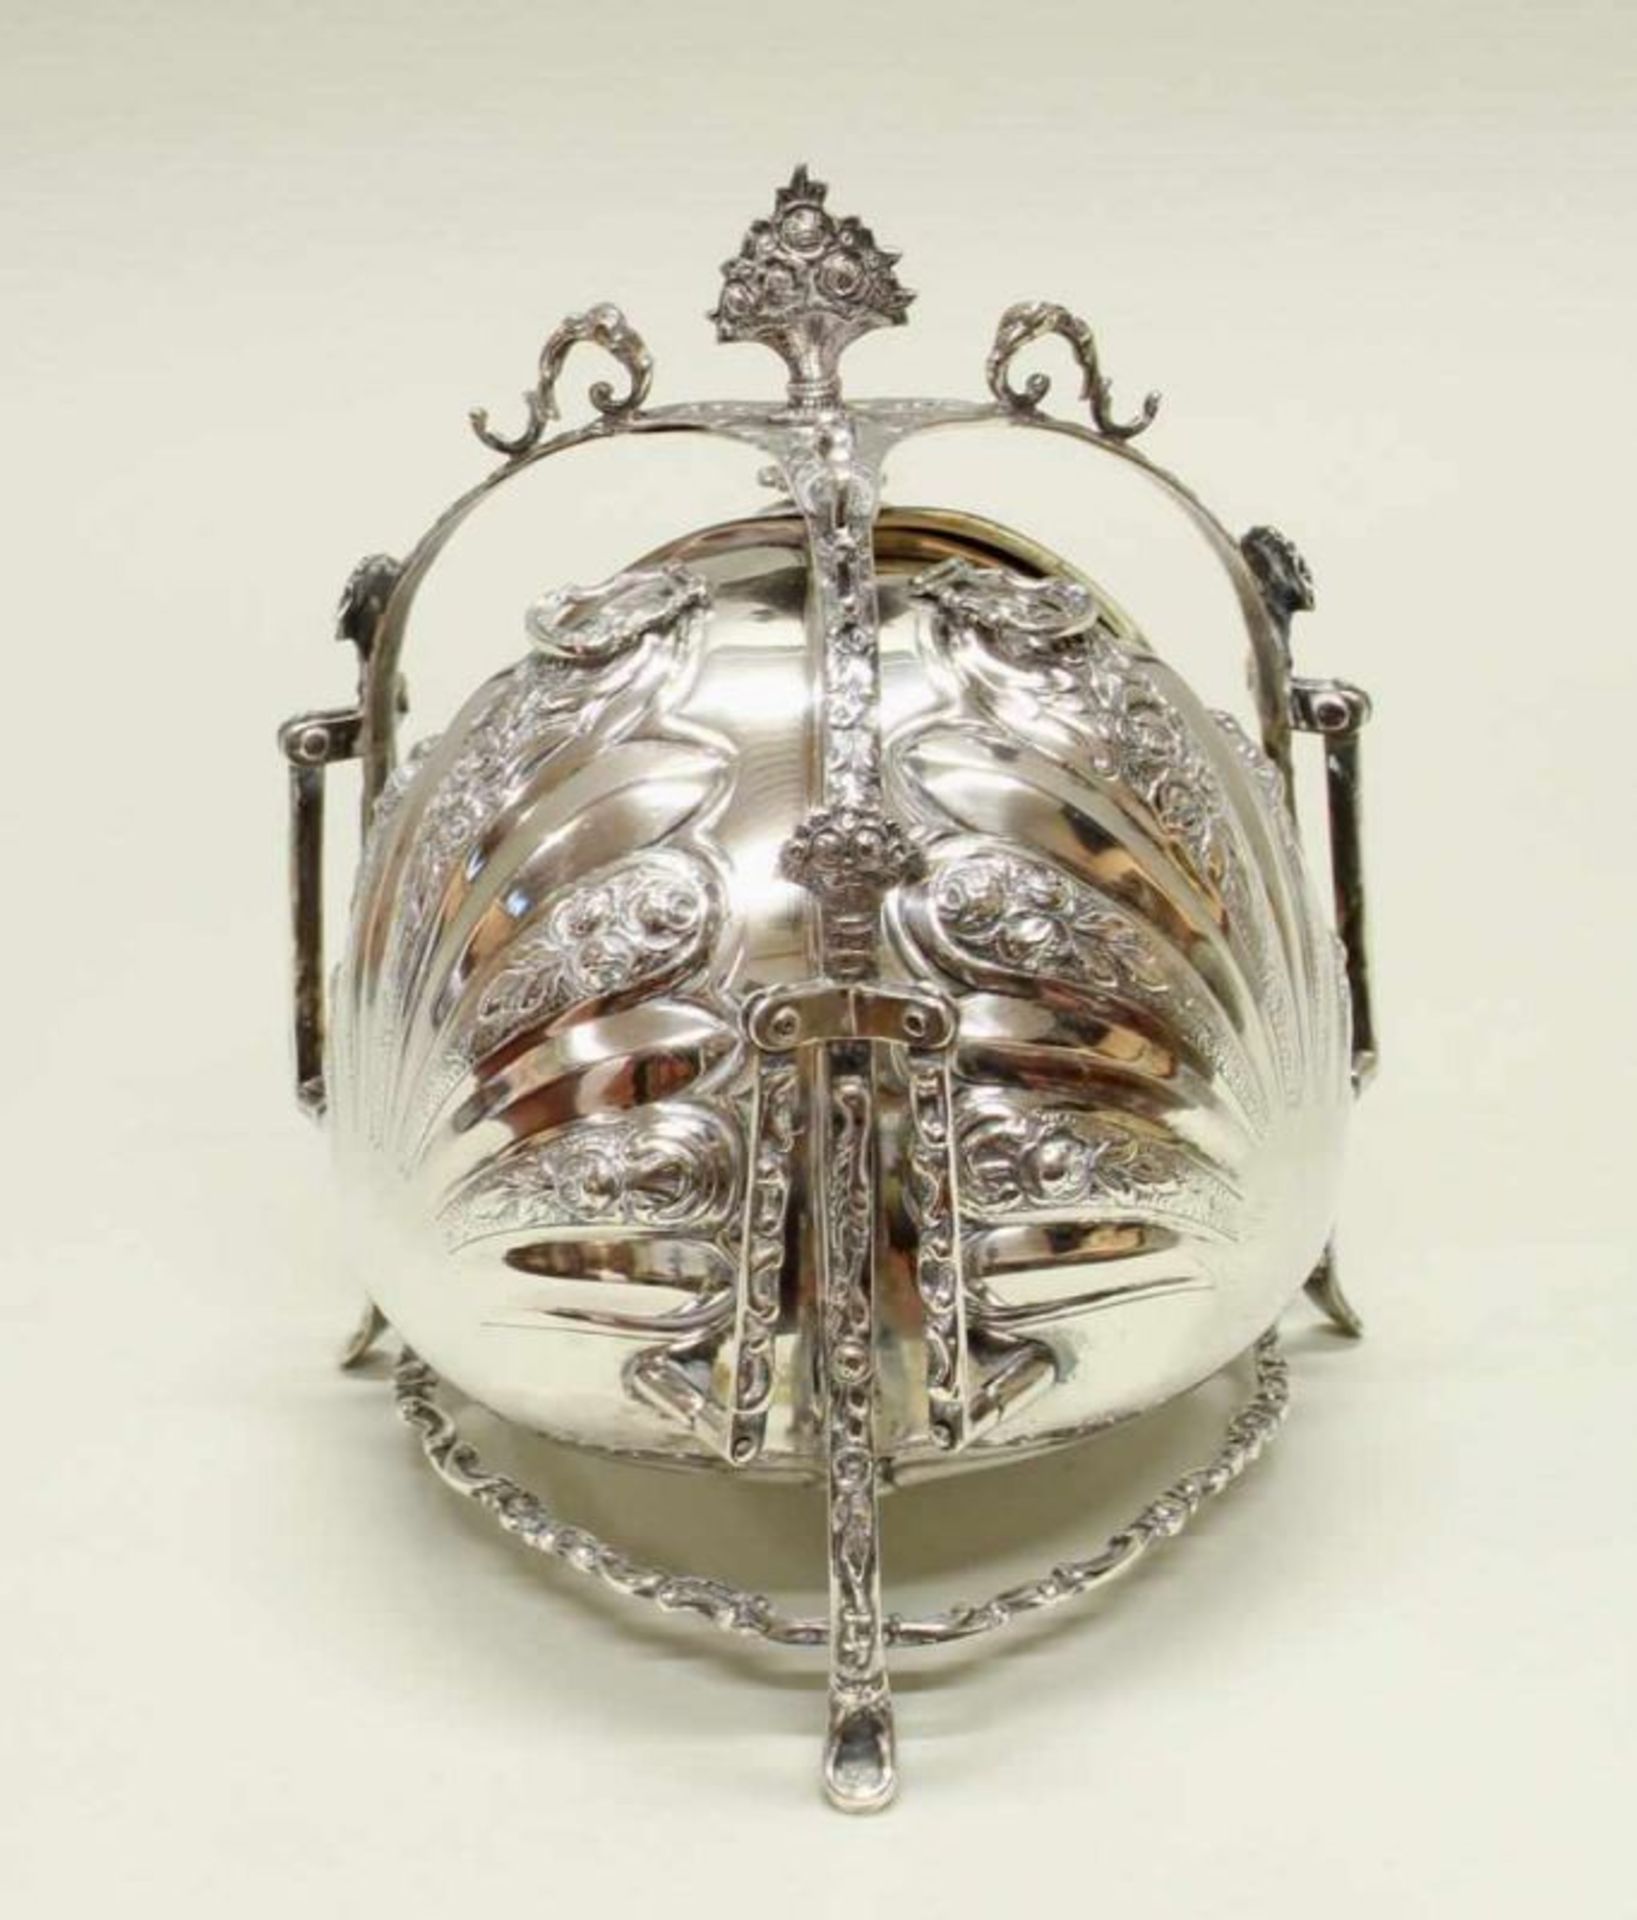 Konfektdose, Silber 800, Punze AO in Wappen, bezeichnet Handarbeit, ovoider Korpus mit drei